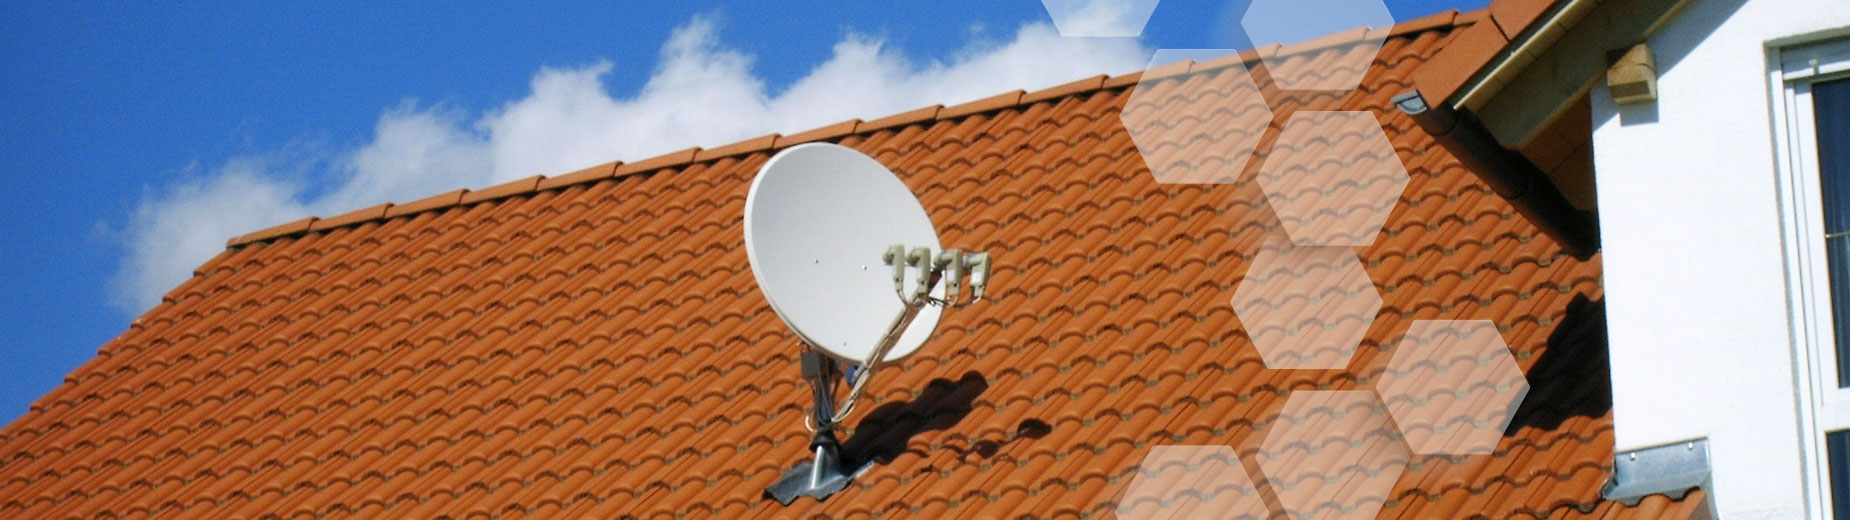 Satelliten/Kabel-TV 